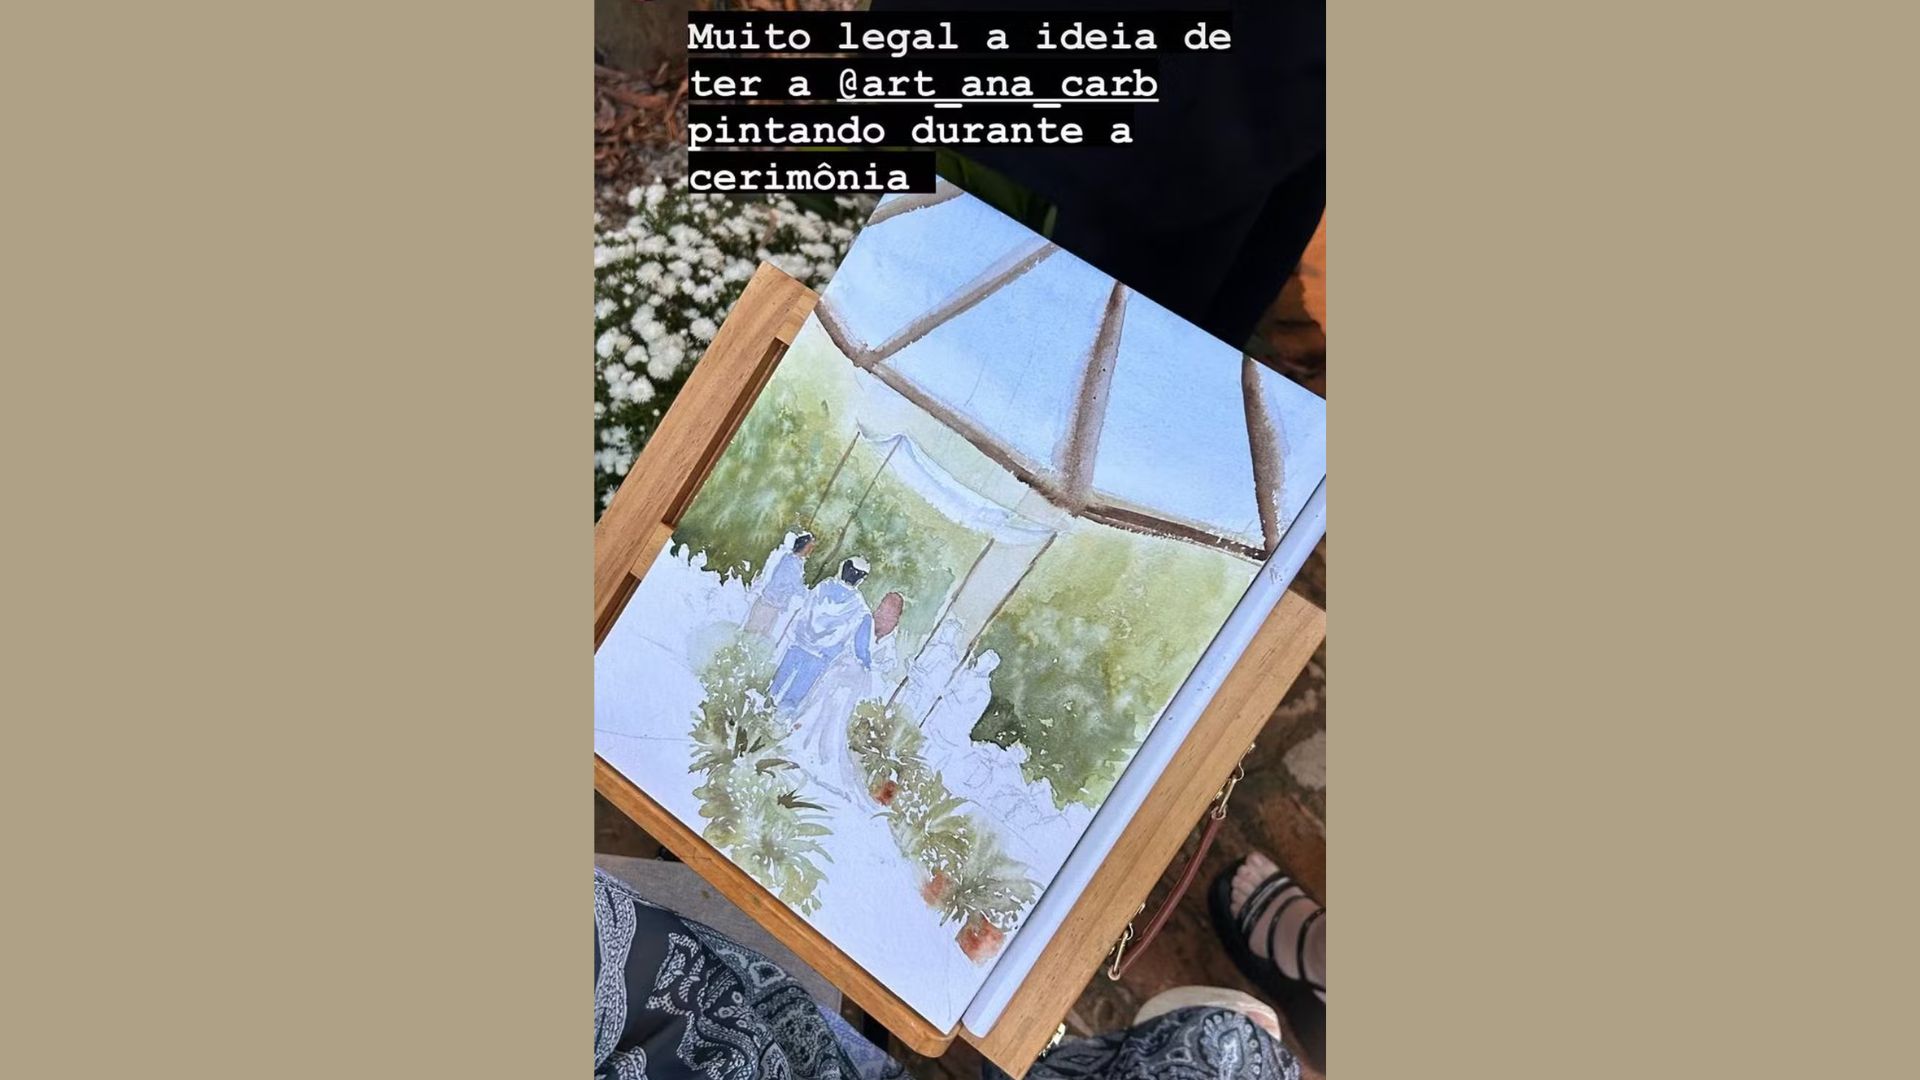 Casamento de Caco Ciocler é pintado por artista — Reprodução/Instagram